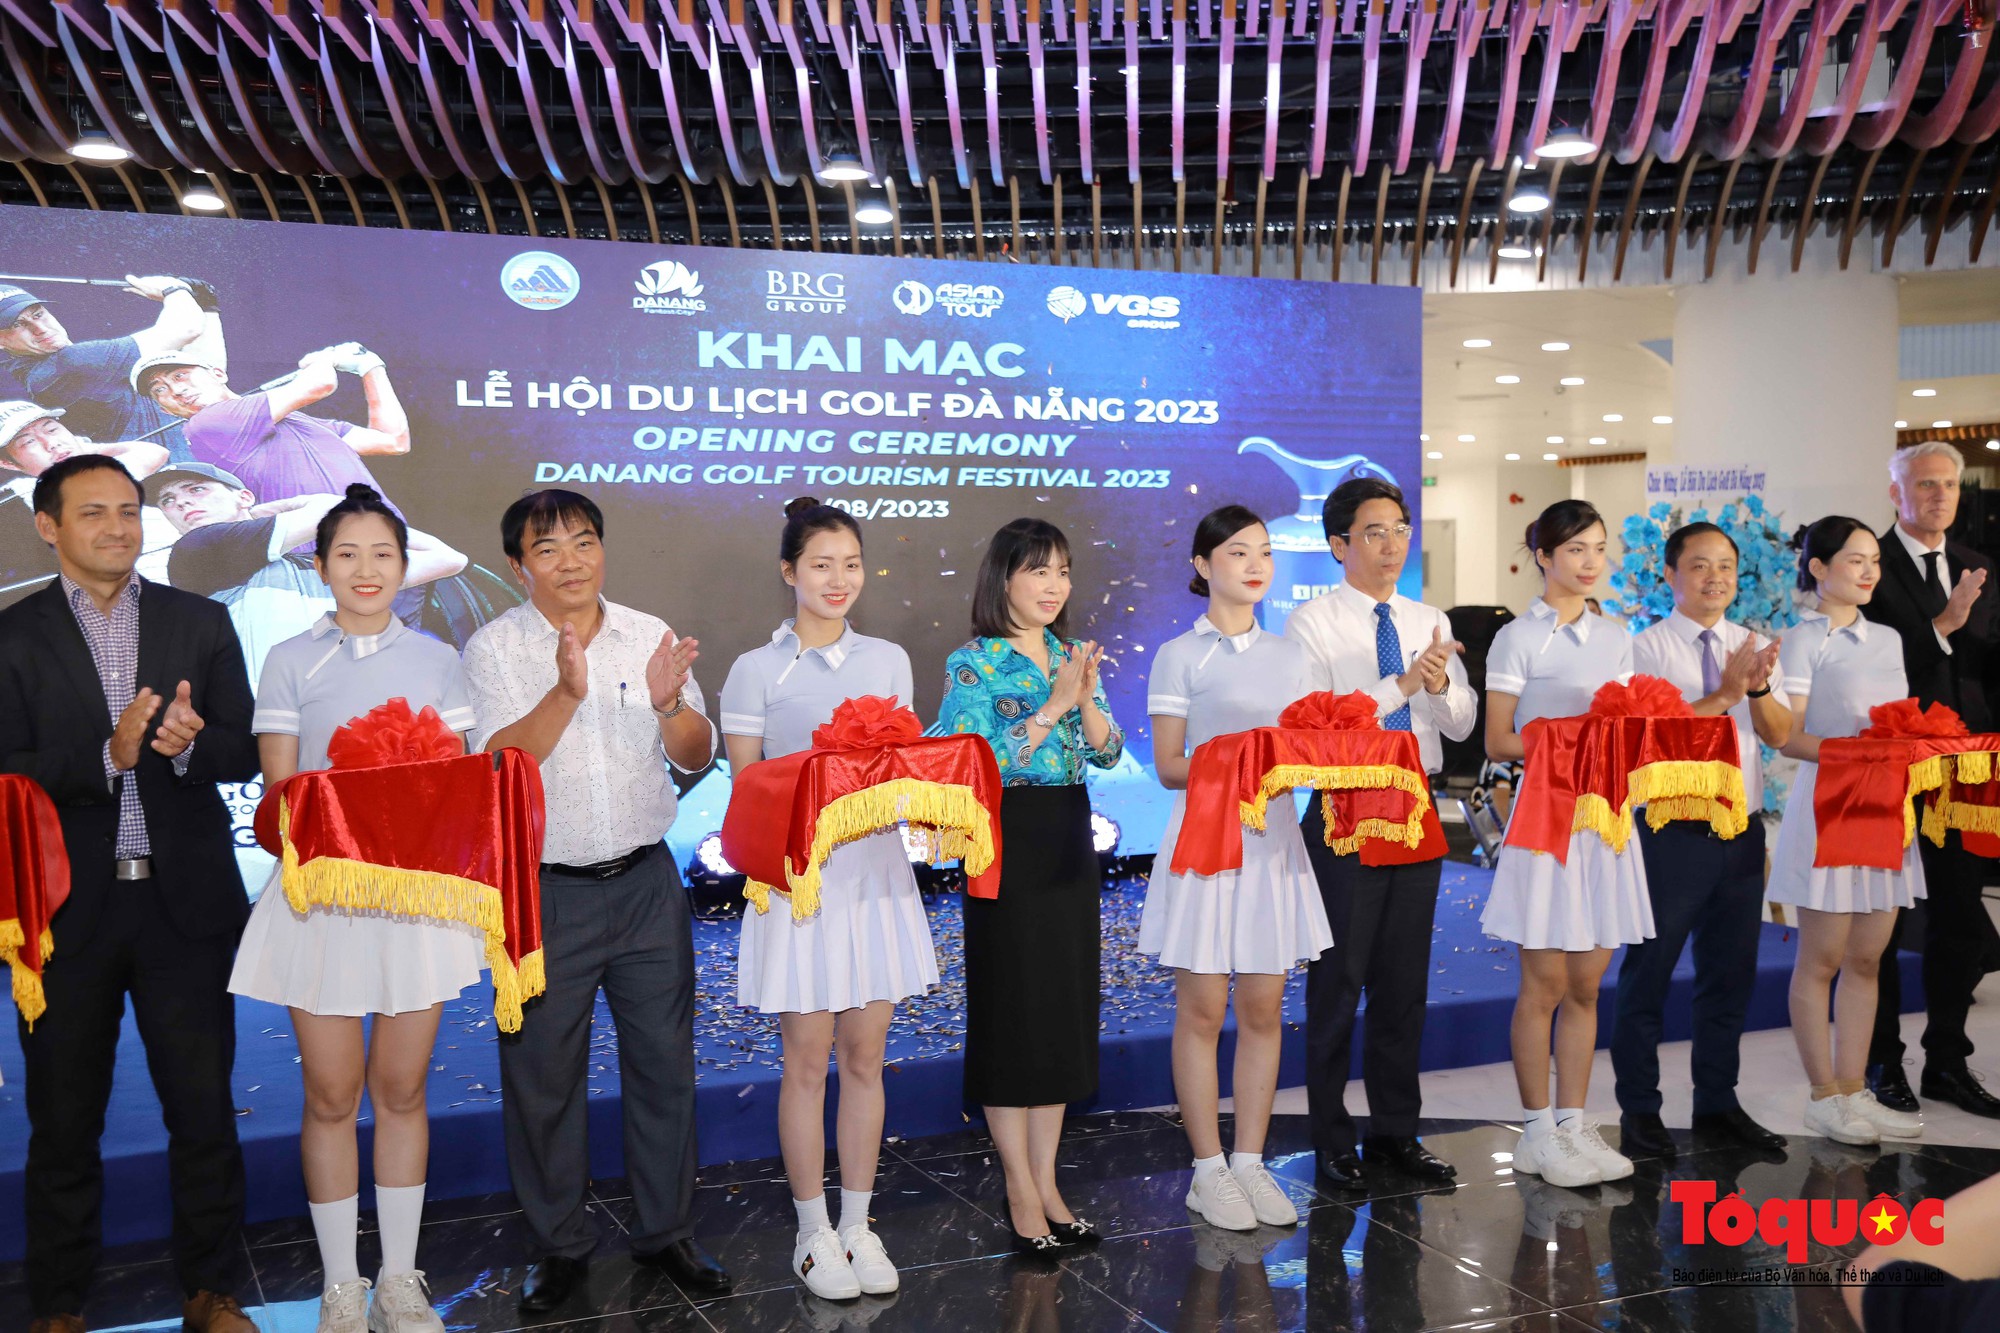 Khai mạc Lễ hội du lịch golf Đà Nẵng 2023 - Ảnh 1.